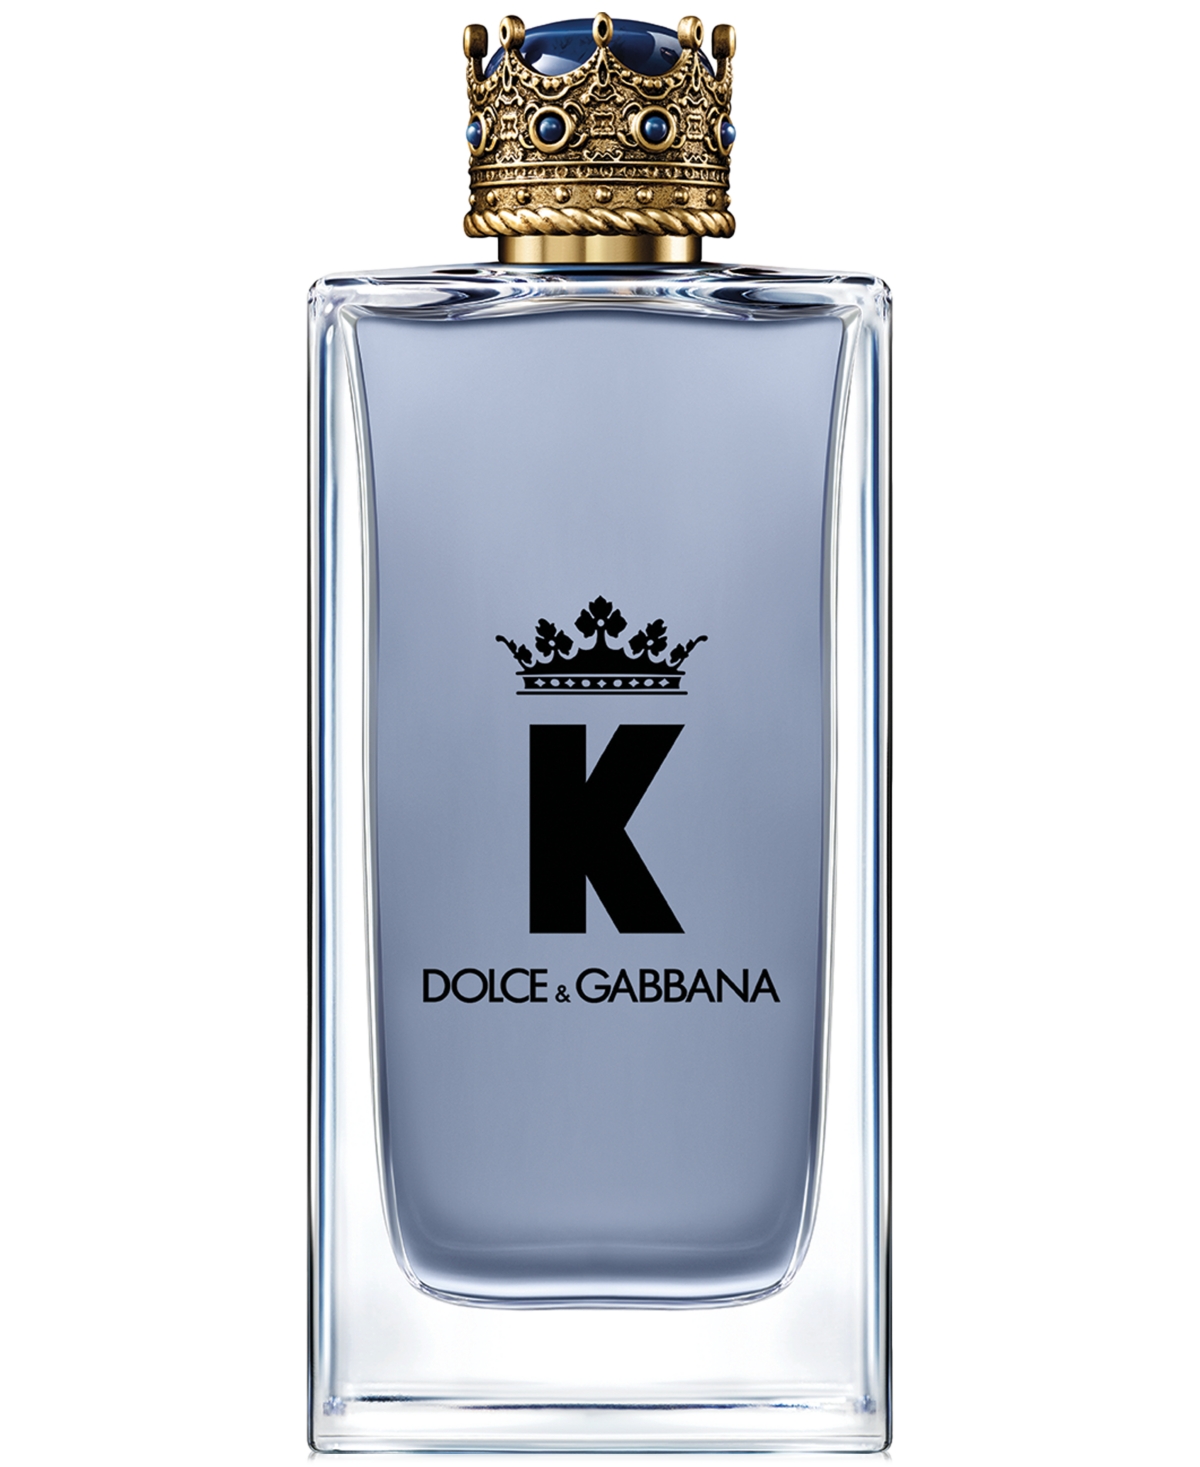 Dolce&Gabbana Men's K Eau de Toilette, 6.7 oz.